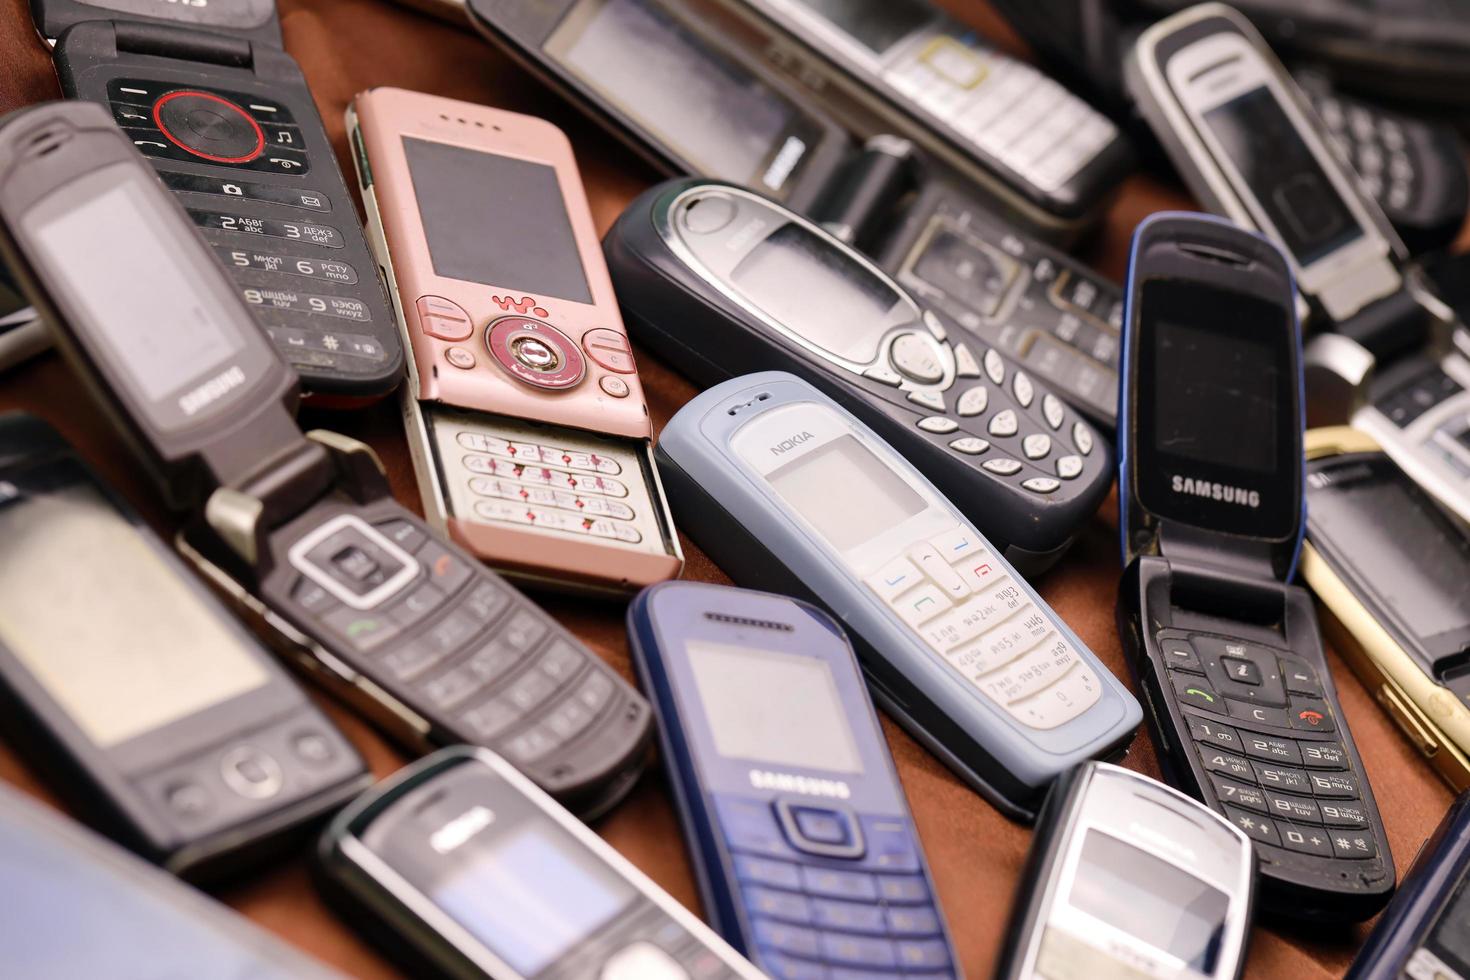 ternopil, ucrânia - 24 de abril de 2022, alguns telefones celulares antigos usados desatualizados do período dos anos 90 a 2000. reciclagem de eletrônicos no mercado foto